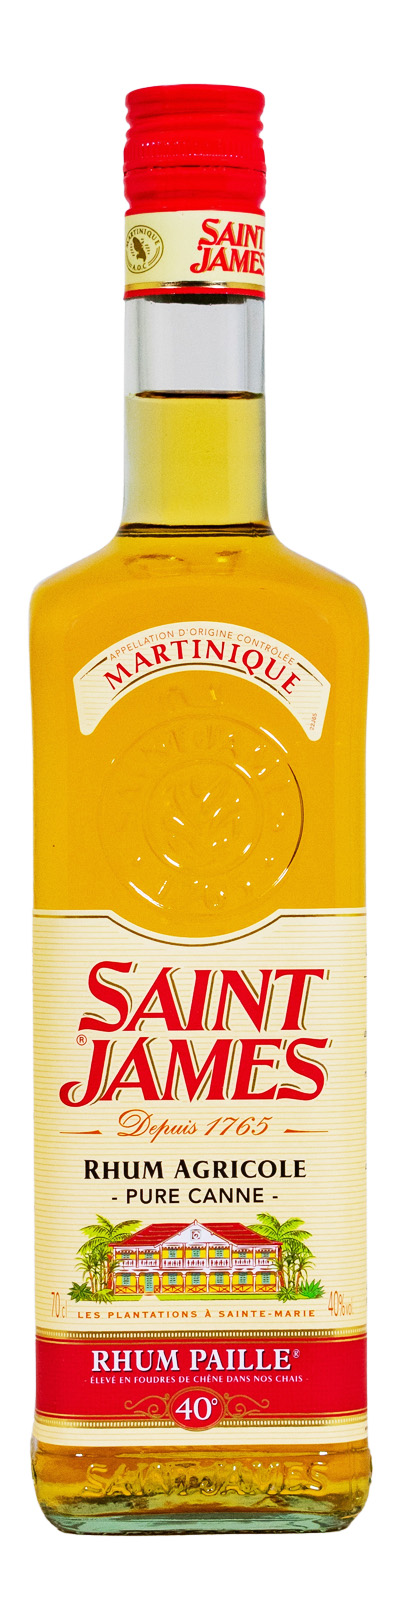 Saint James Rhum Agricole Paille Ambre de Martinique AOP - 0,7L 40% vol